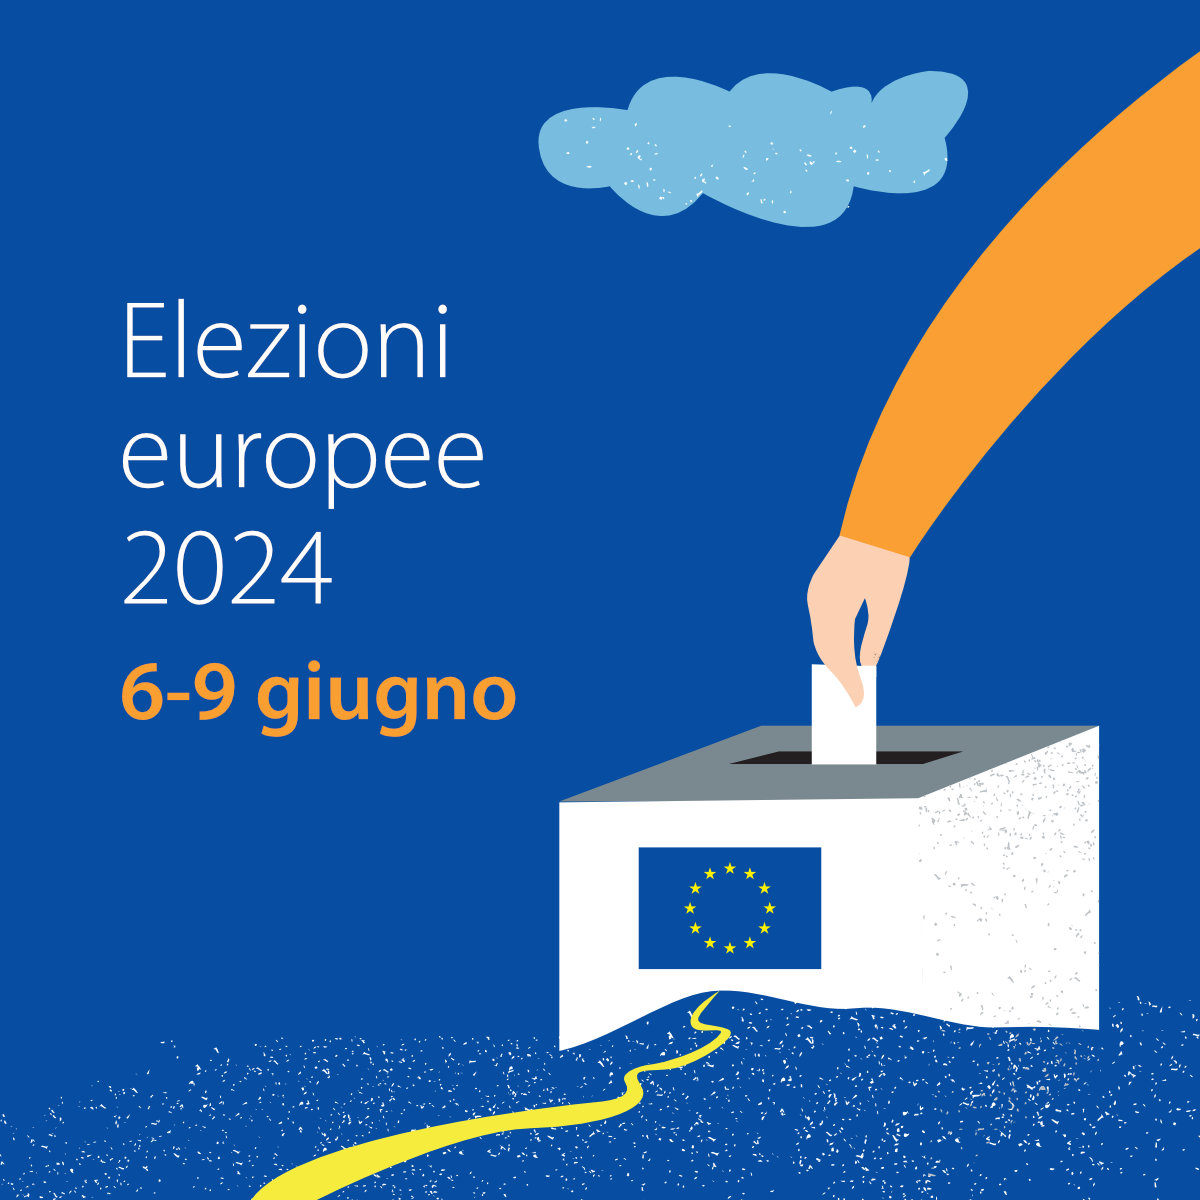 Elezioni europee 2024 - Square.jpg